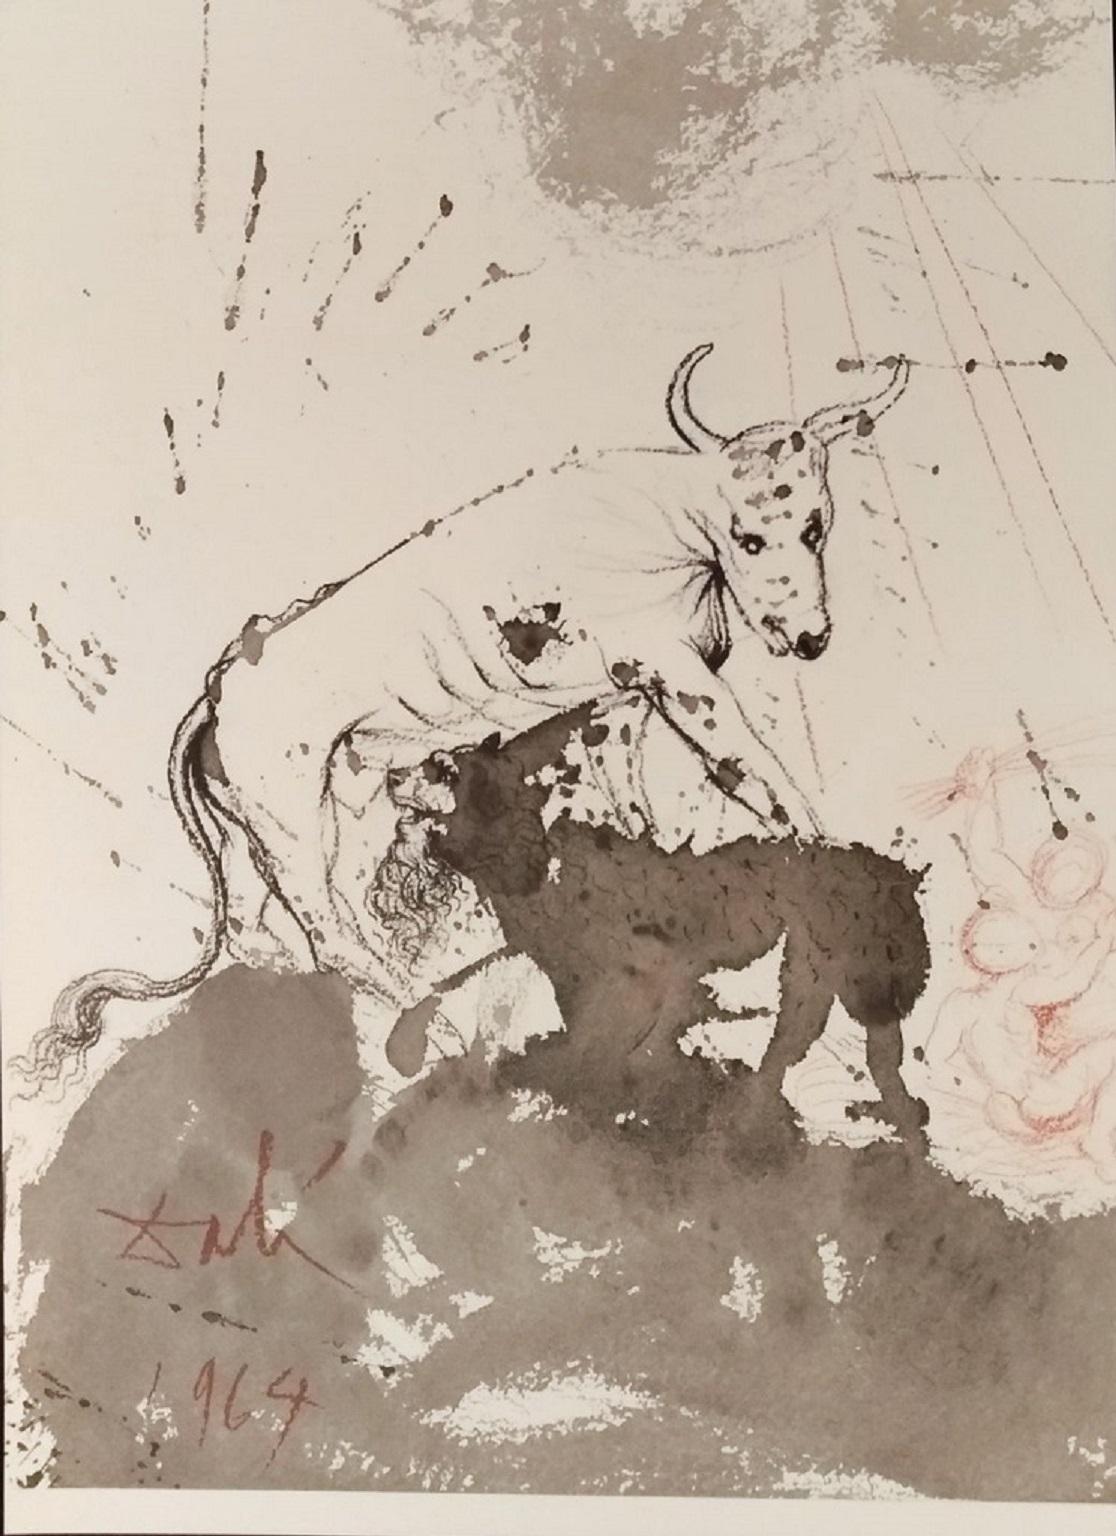 Salvador Dalí Animal Print - Leo quasi Bos comedens paleas - From "Biblia Sacra"